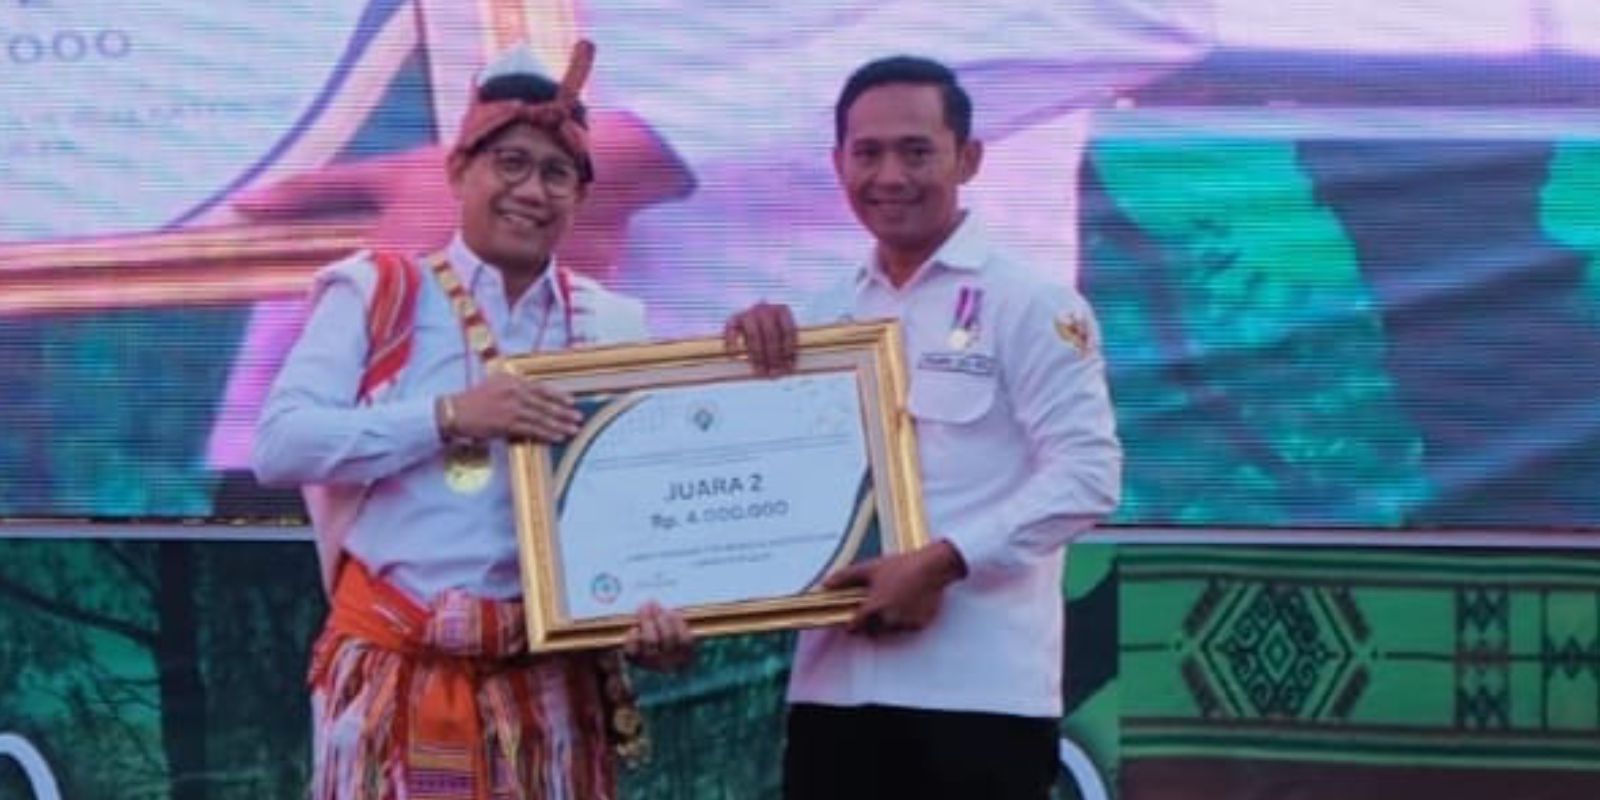 Penyerahan Hadiah Juara 2 Menulis Tingkat Nasional Tahun 2023 Kategori Ilmiah Populer Oleh Menteri Desa, Abdul Halim Iskandar di Nusa Tenggara Timur